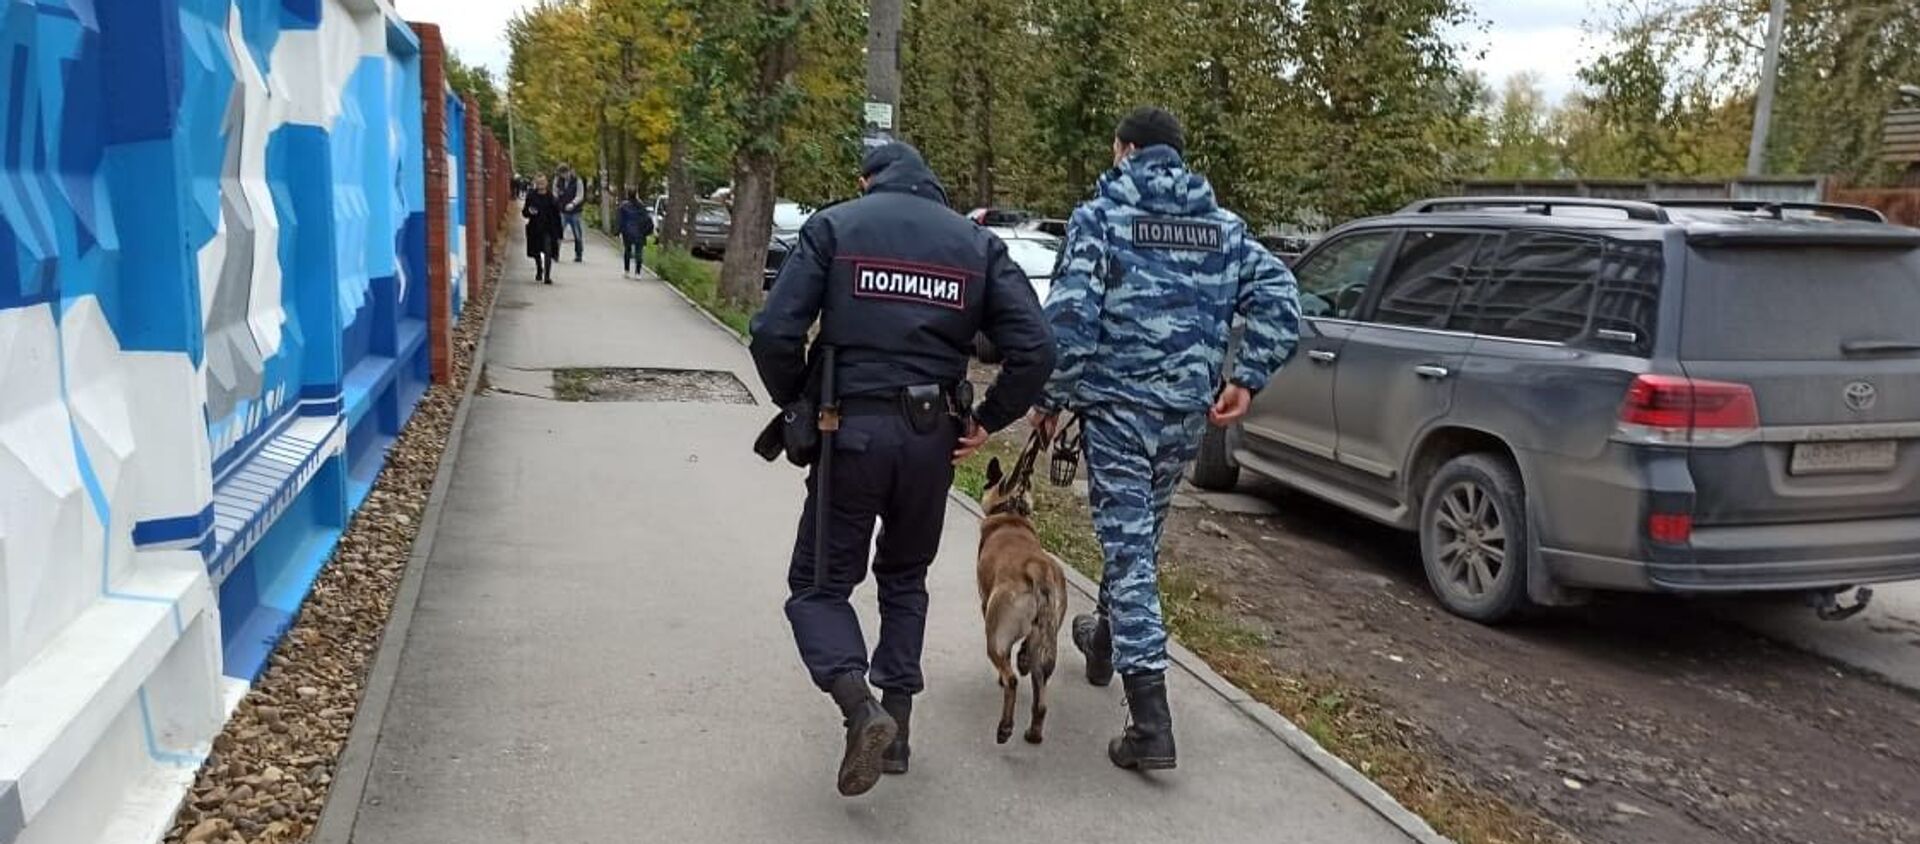 Cảnh sát với chó nghiệp vụ trên đường phố Perm, nơi một người không rõ danh tính nổ súng tại Đại học quốc gia Perm - Sputnik Việt Nam, 1920, 21.09.2021